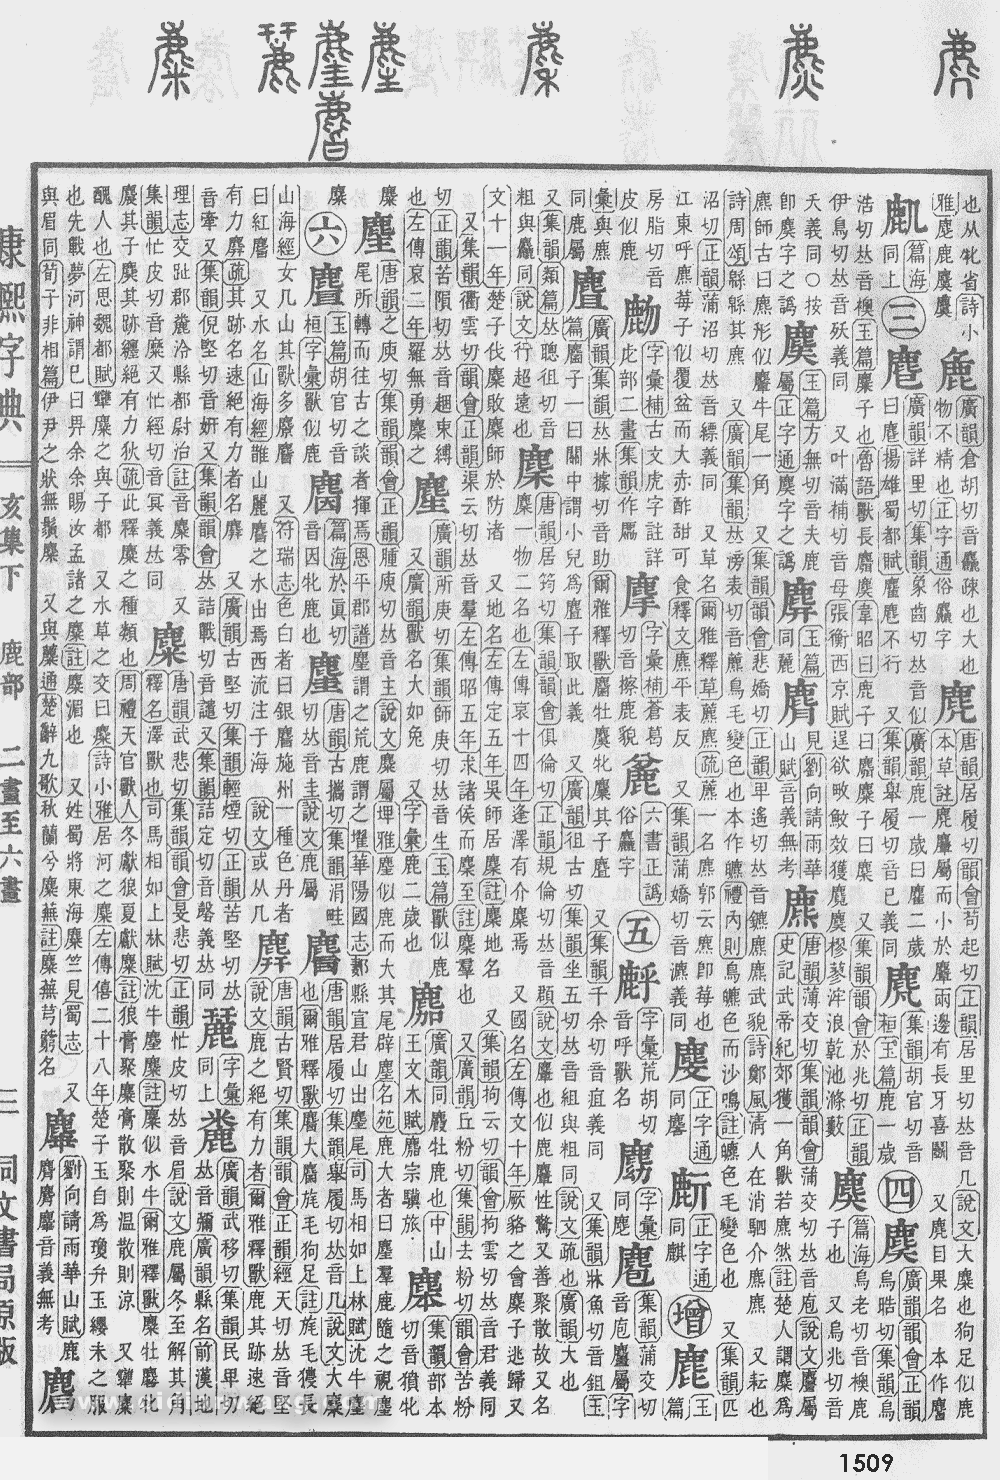 康熙字典掃描版第1509頁